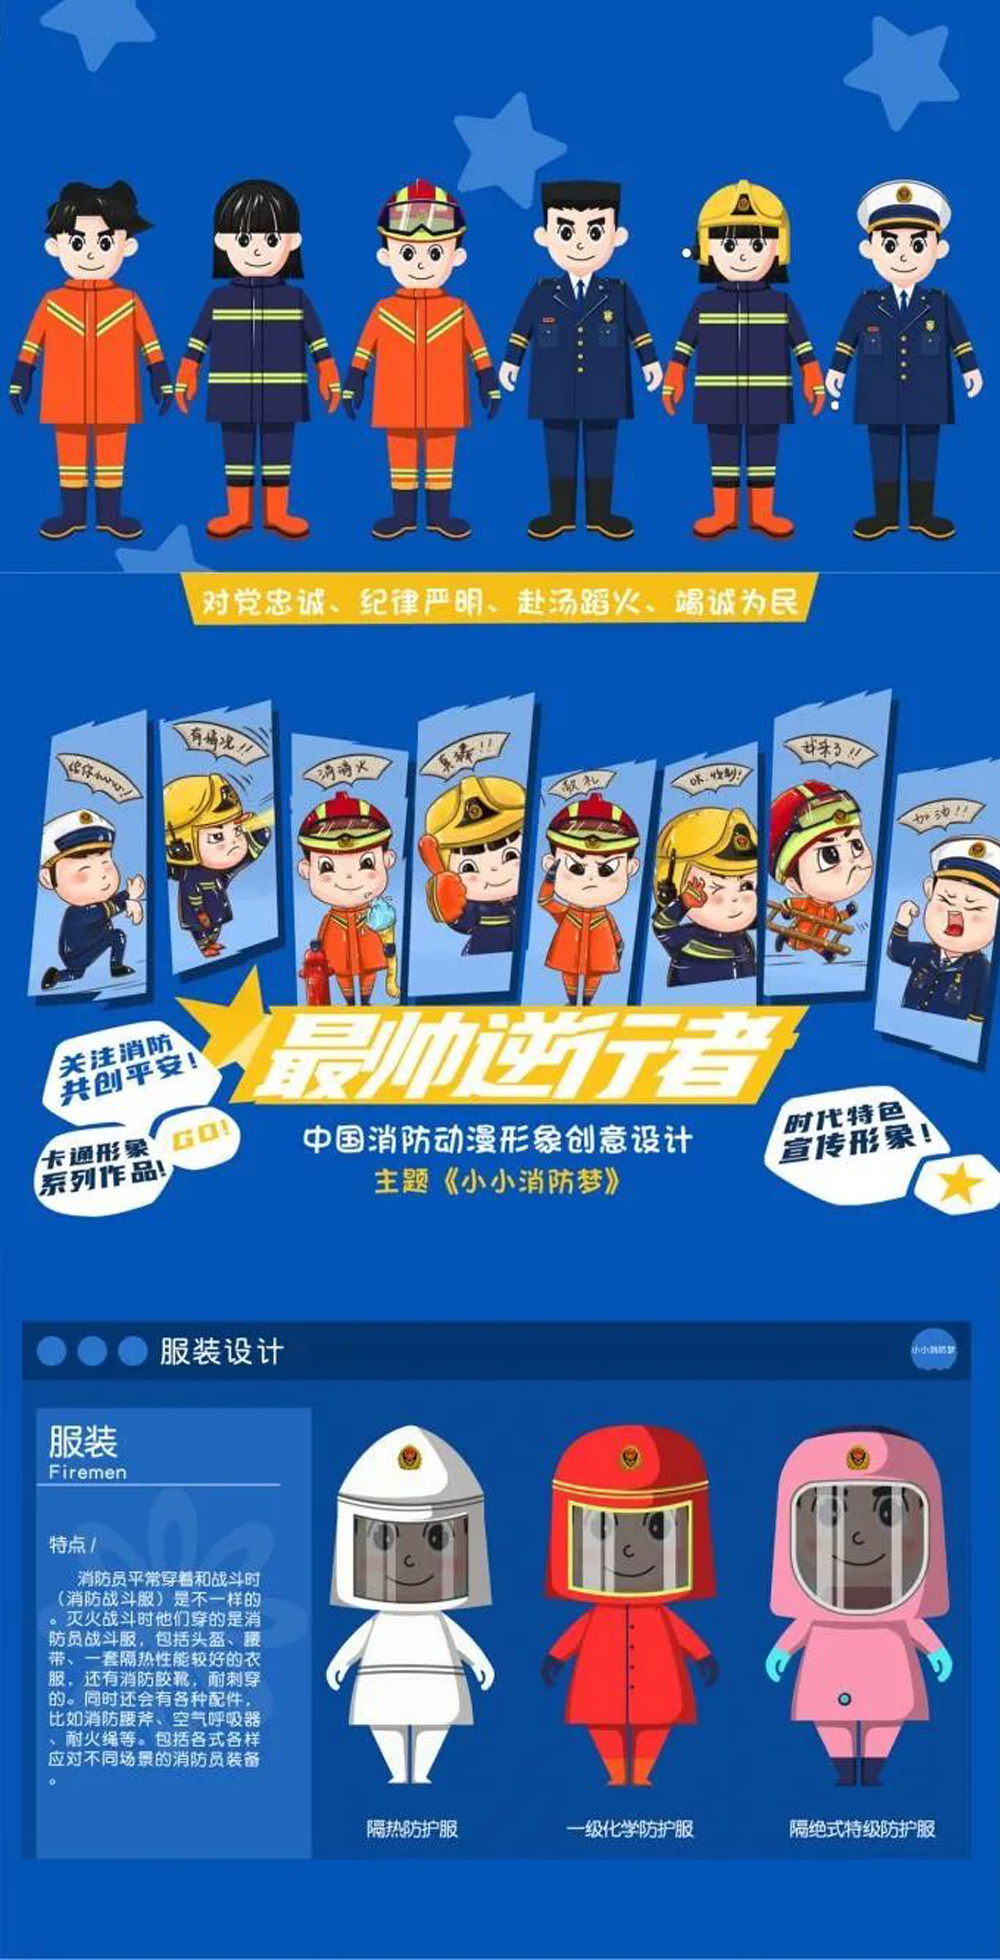 中国消防动漫形象创意设计大赛获奖名单及获奖作品(图11)